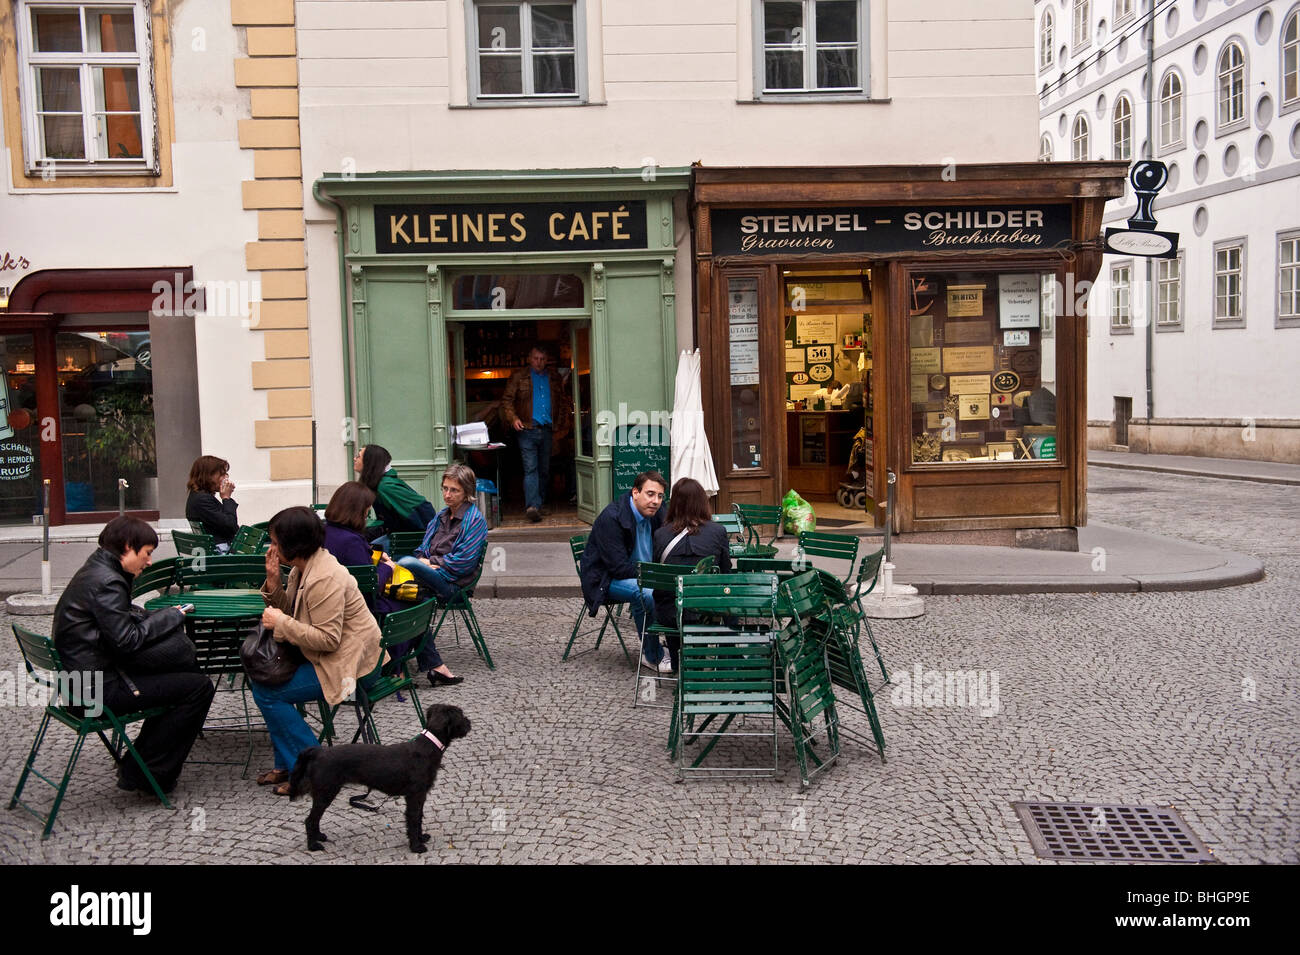 Outdoor café in central Vienna Austria Stock Photo